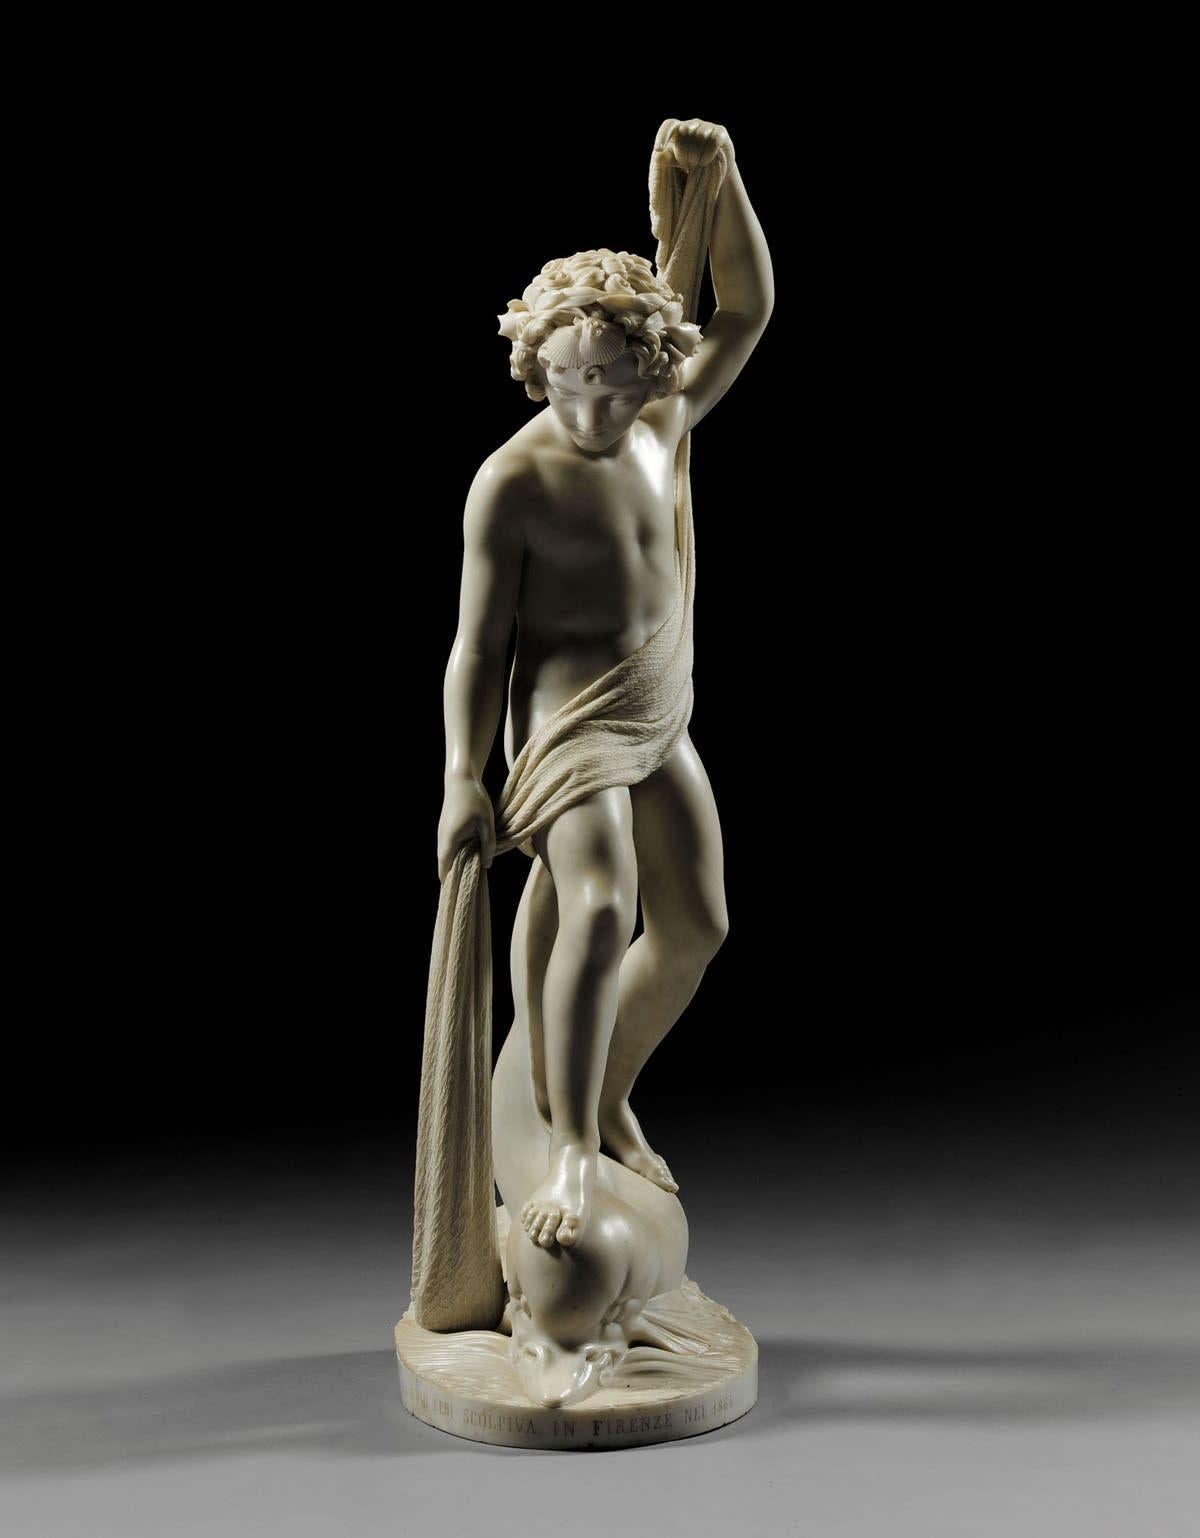 Le garçon pêcheur suprême statue en marbre de Carrare - Sculpture de Pio Fedi